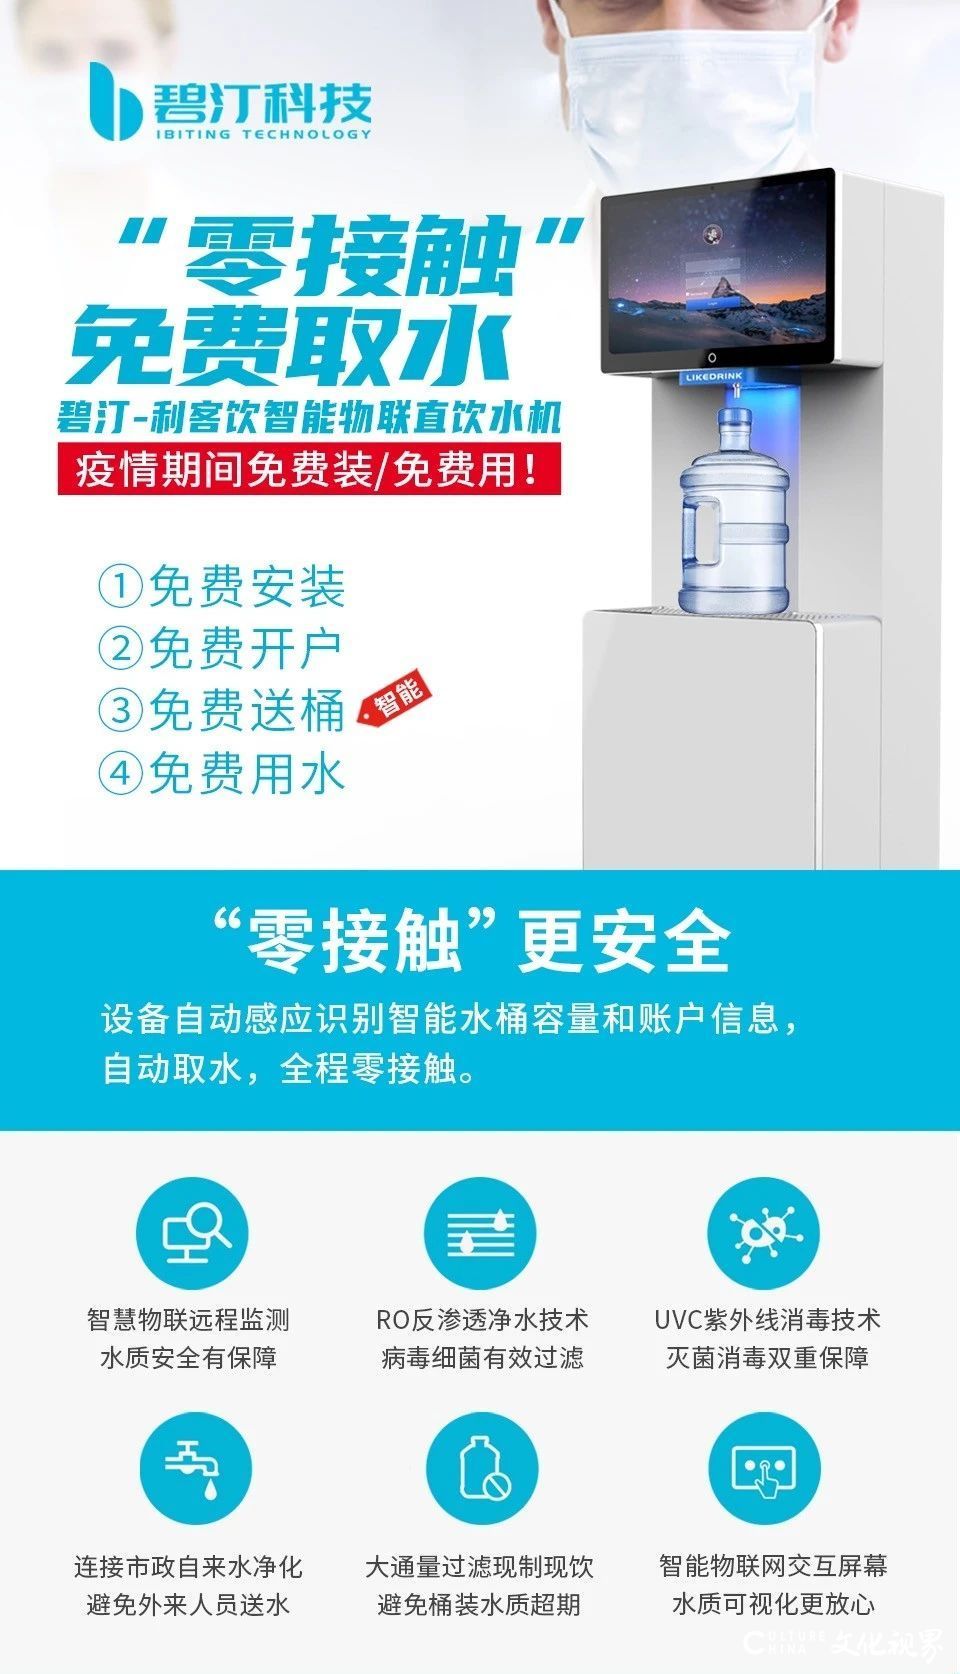 让媒体人喝上健康水——碧汀科技向济南日报捐赠价值20万余元的直饮水设备